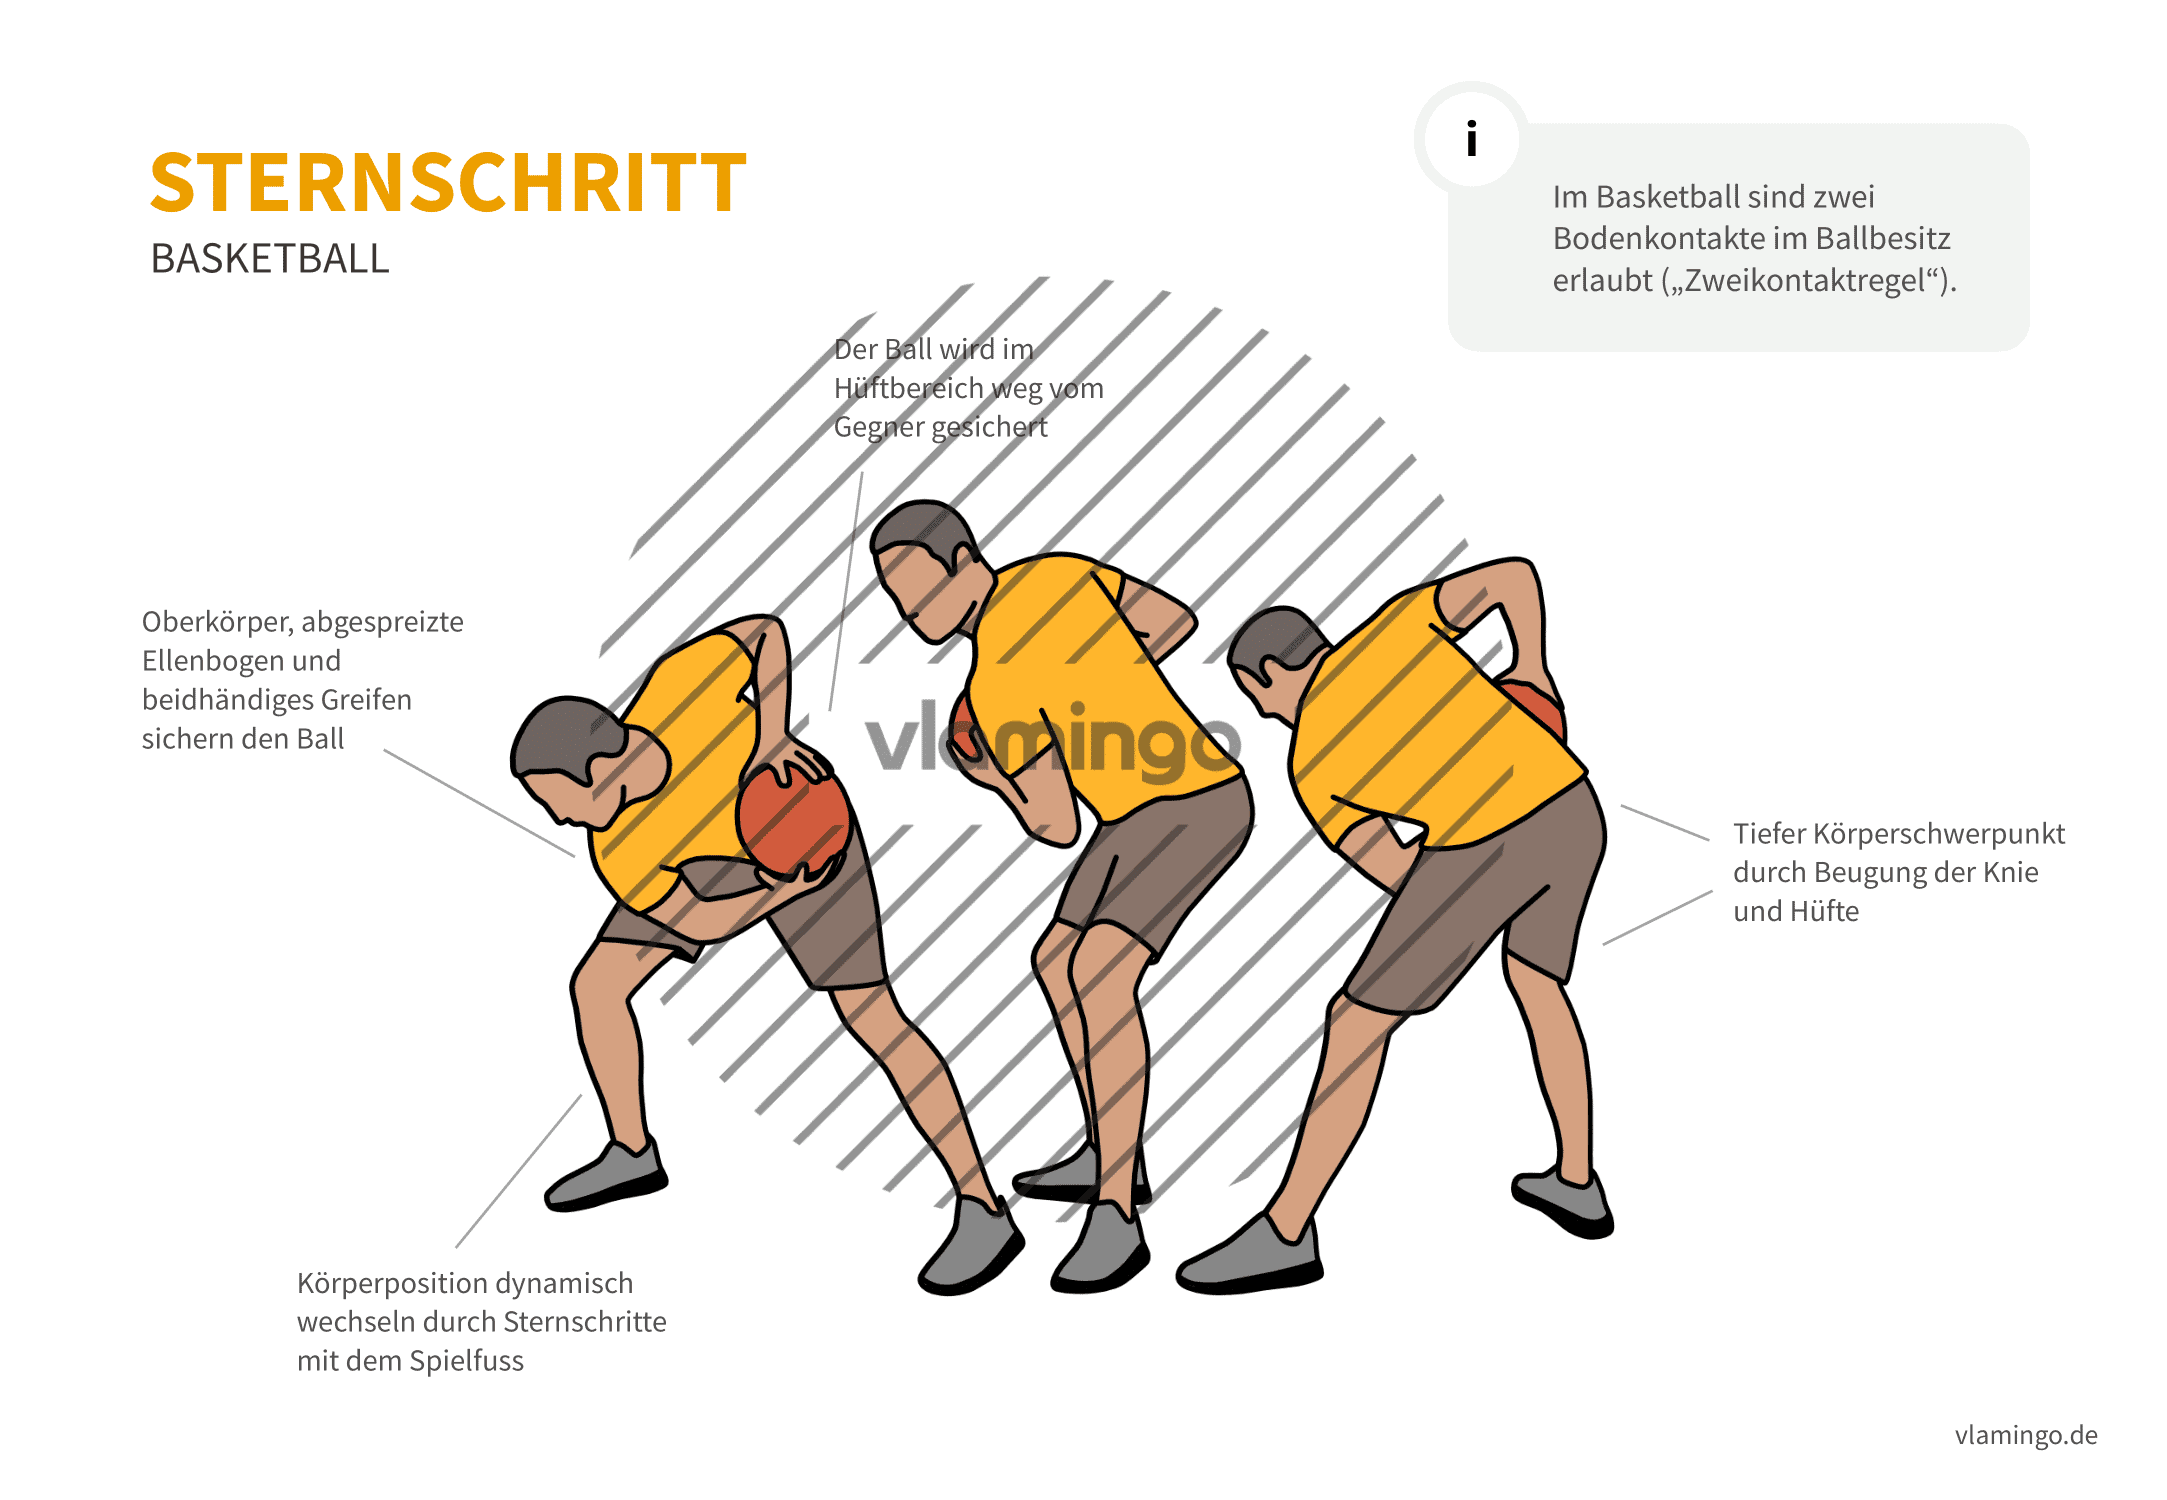 Sternschritt - Basketball